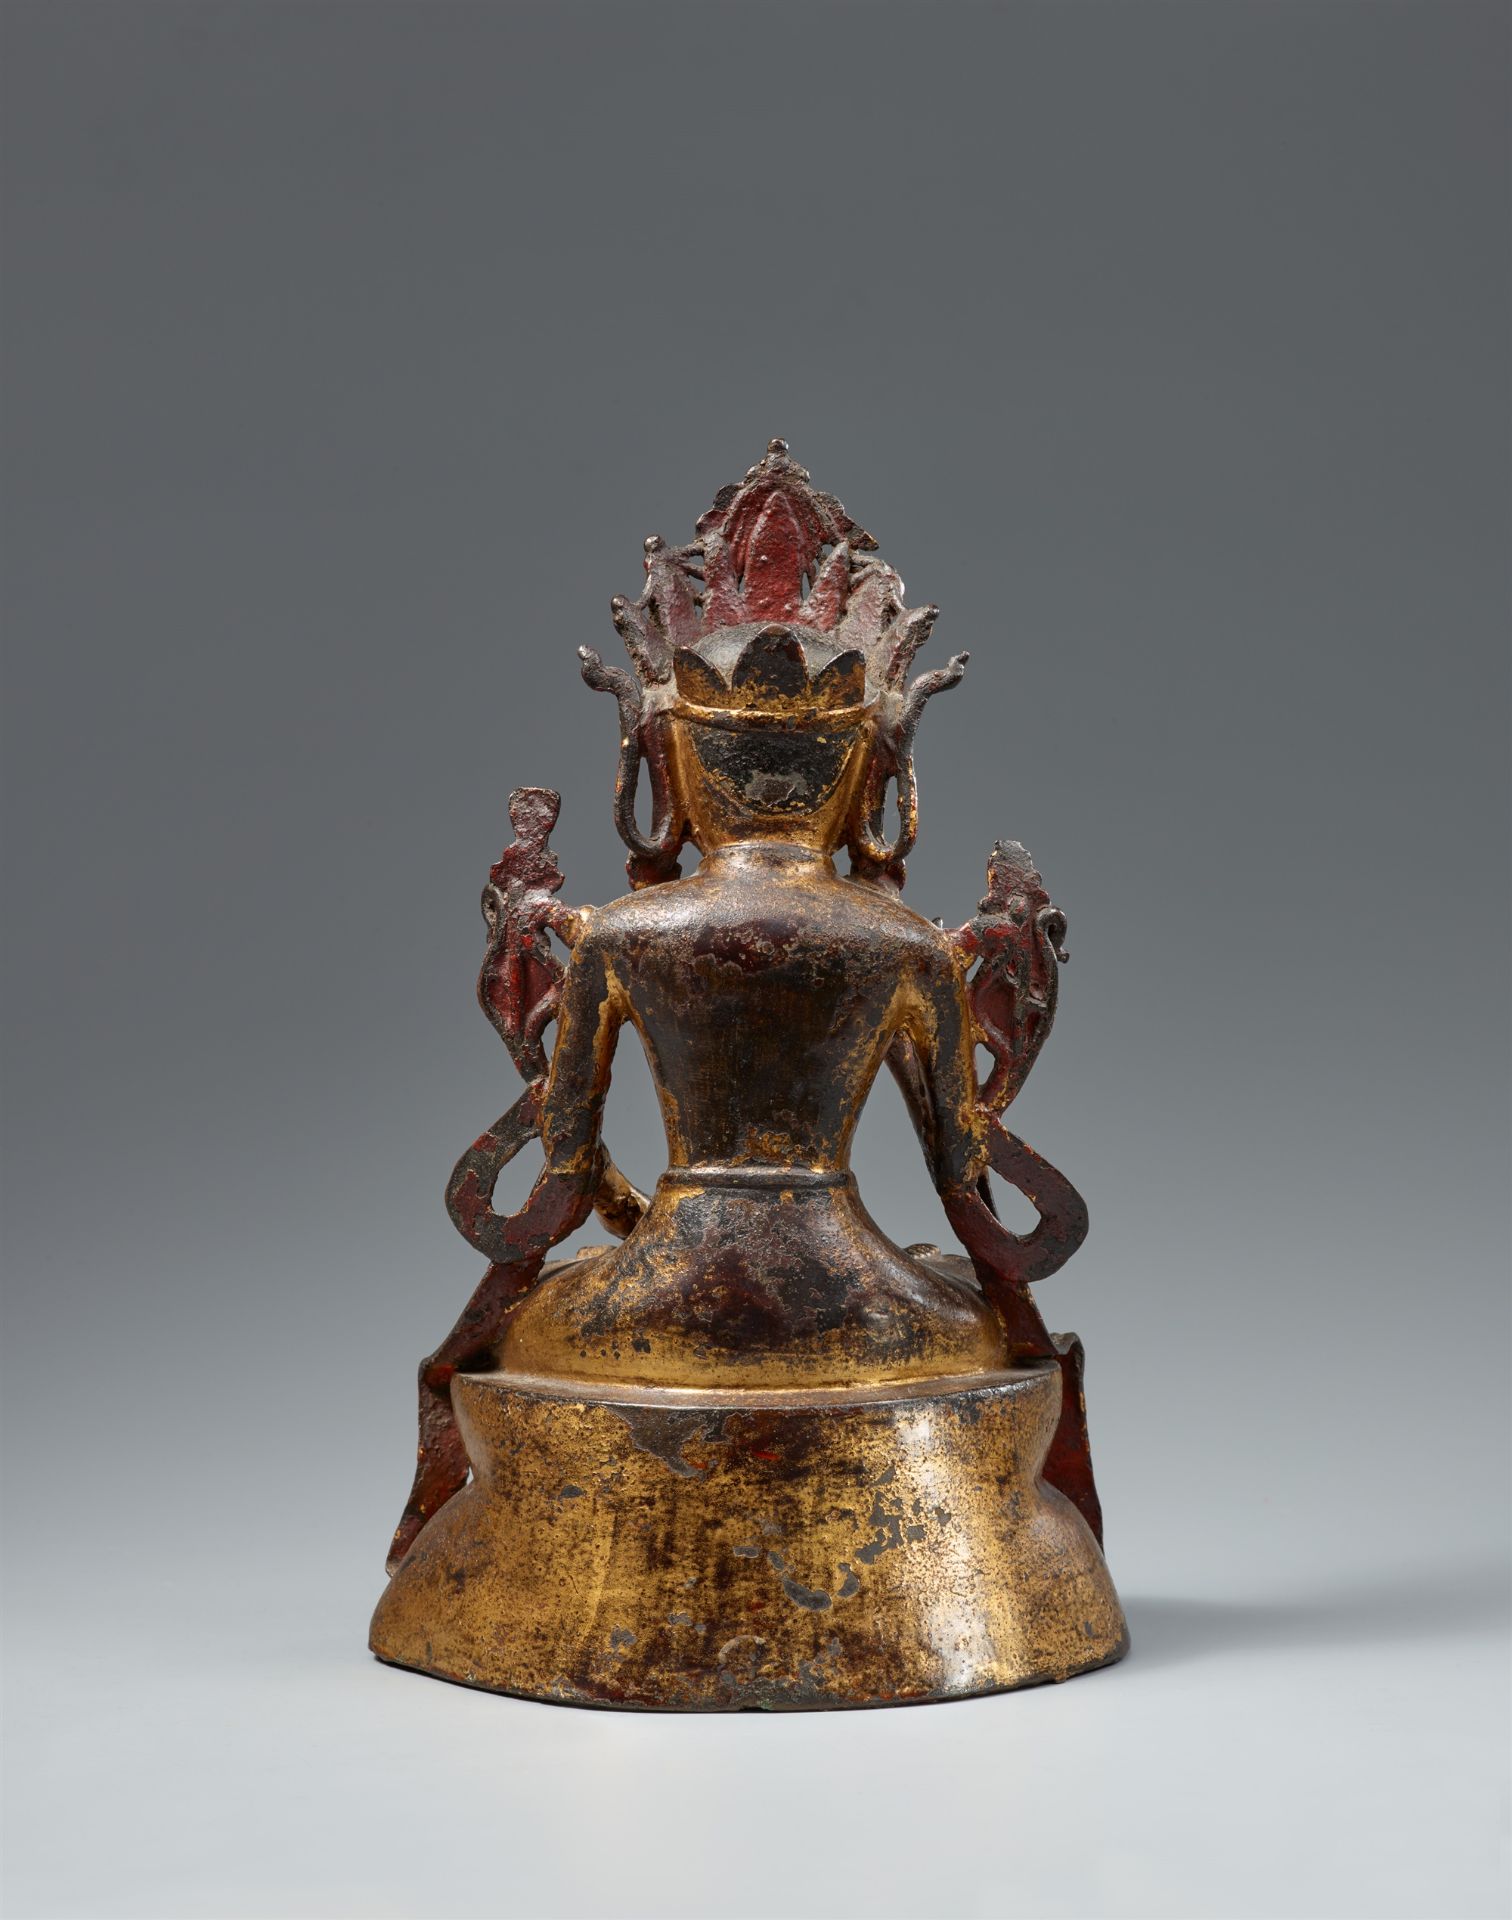 Reich geschmückter Bodhisattva. Bronze mit vergoldeter Lackfassung. Ming-Zeit, wohl frühes 15. Jh. - Bild 2 aus 2